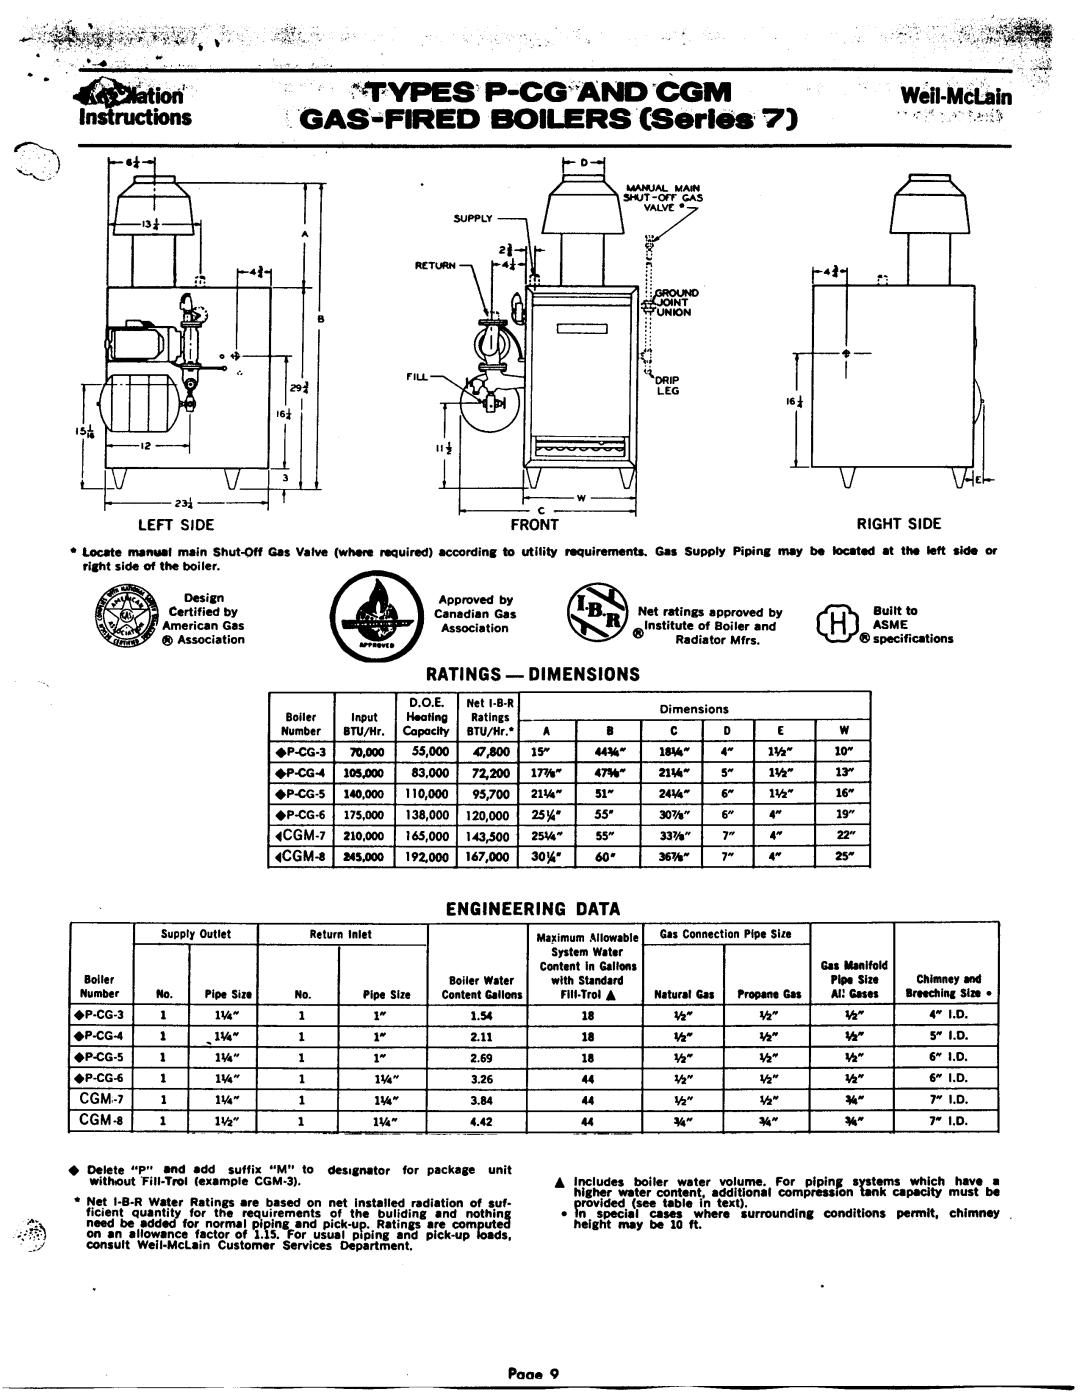 Weil-McLain CGM (Series 7), PCG (Series 7) manual 